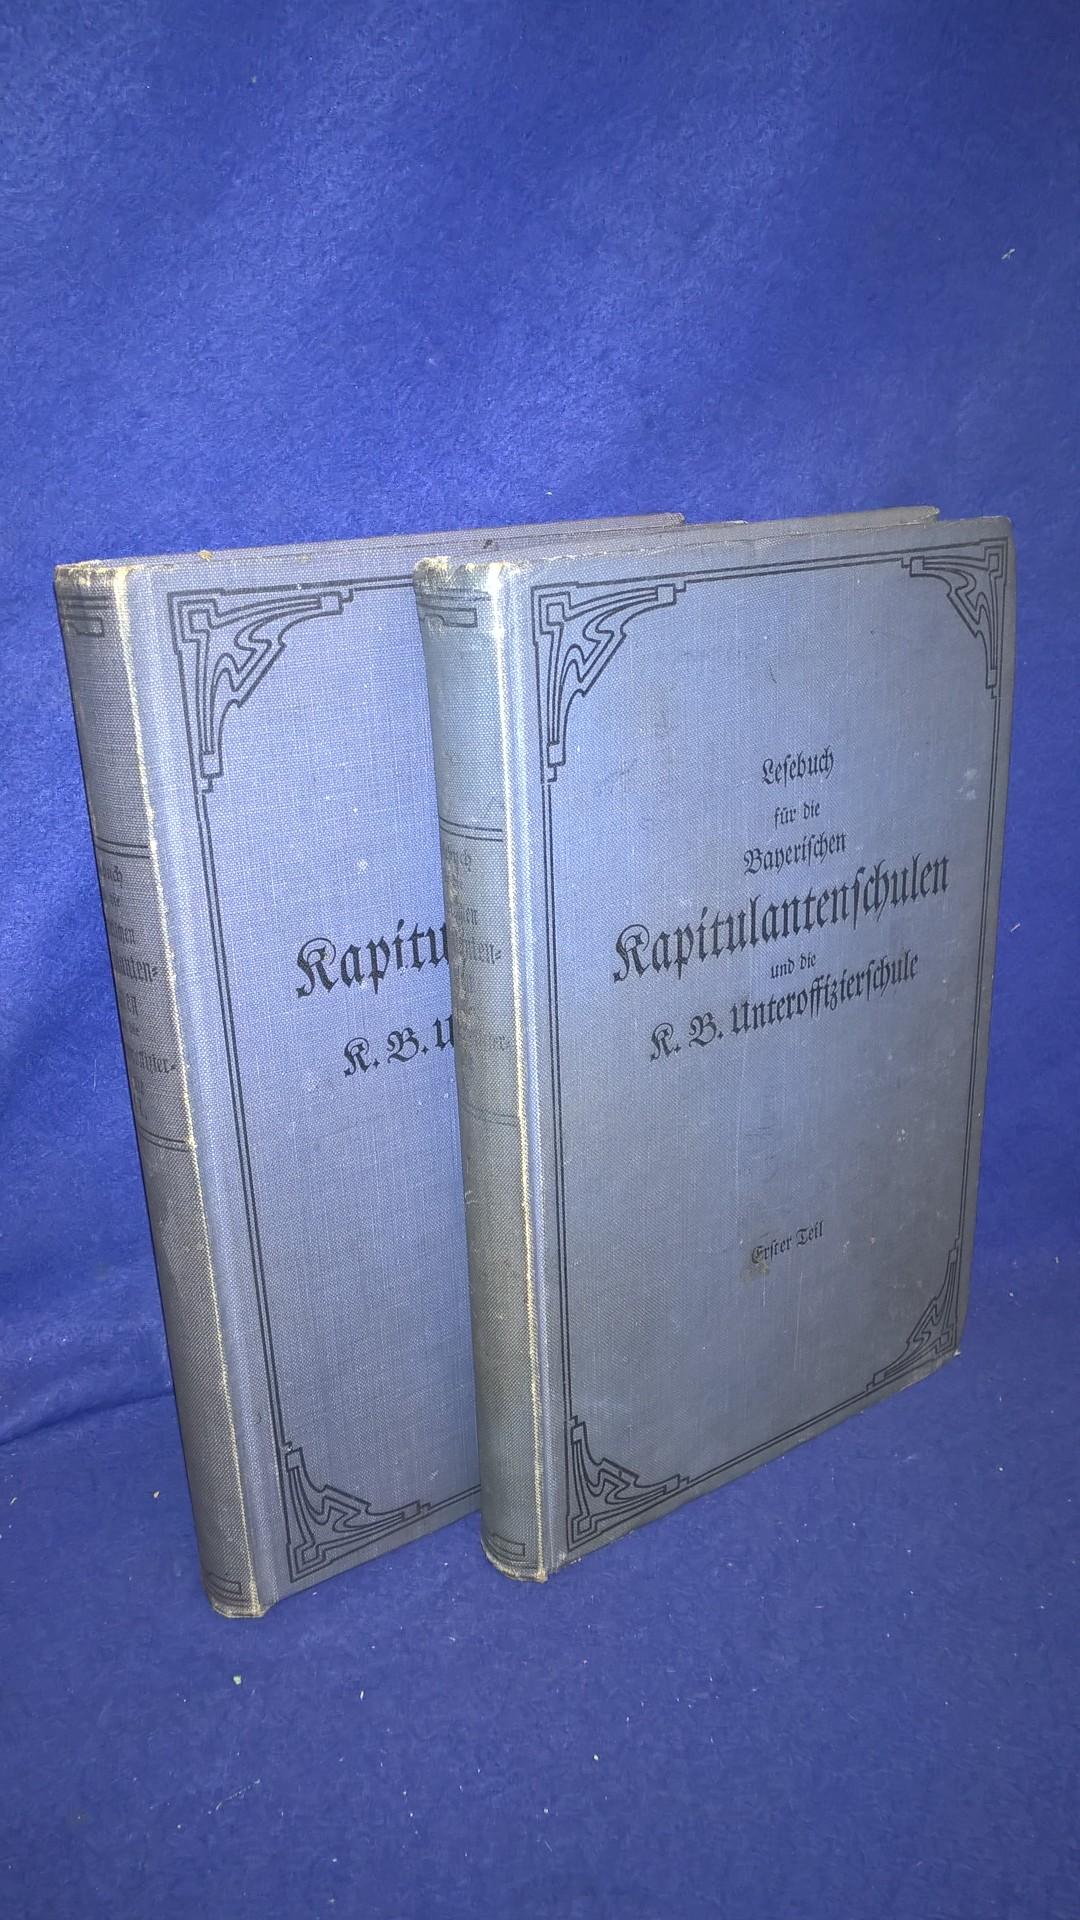 Lesebuch der Bayerischen Kapitulantenschulen und die K.B. Unteroffizierschule. Erster und zweiter Teil so komplett